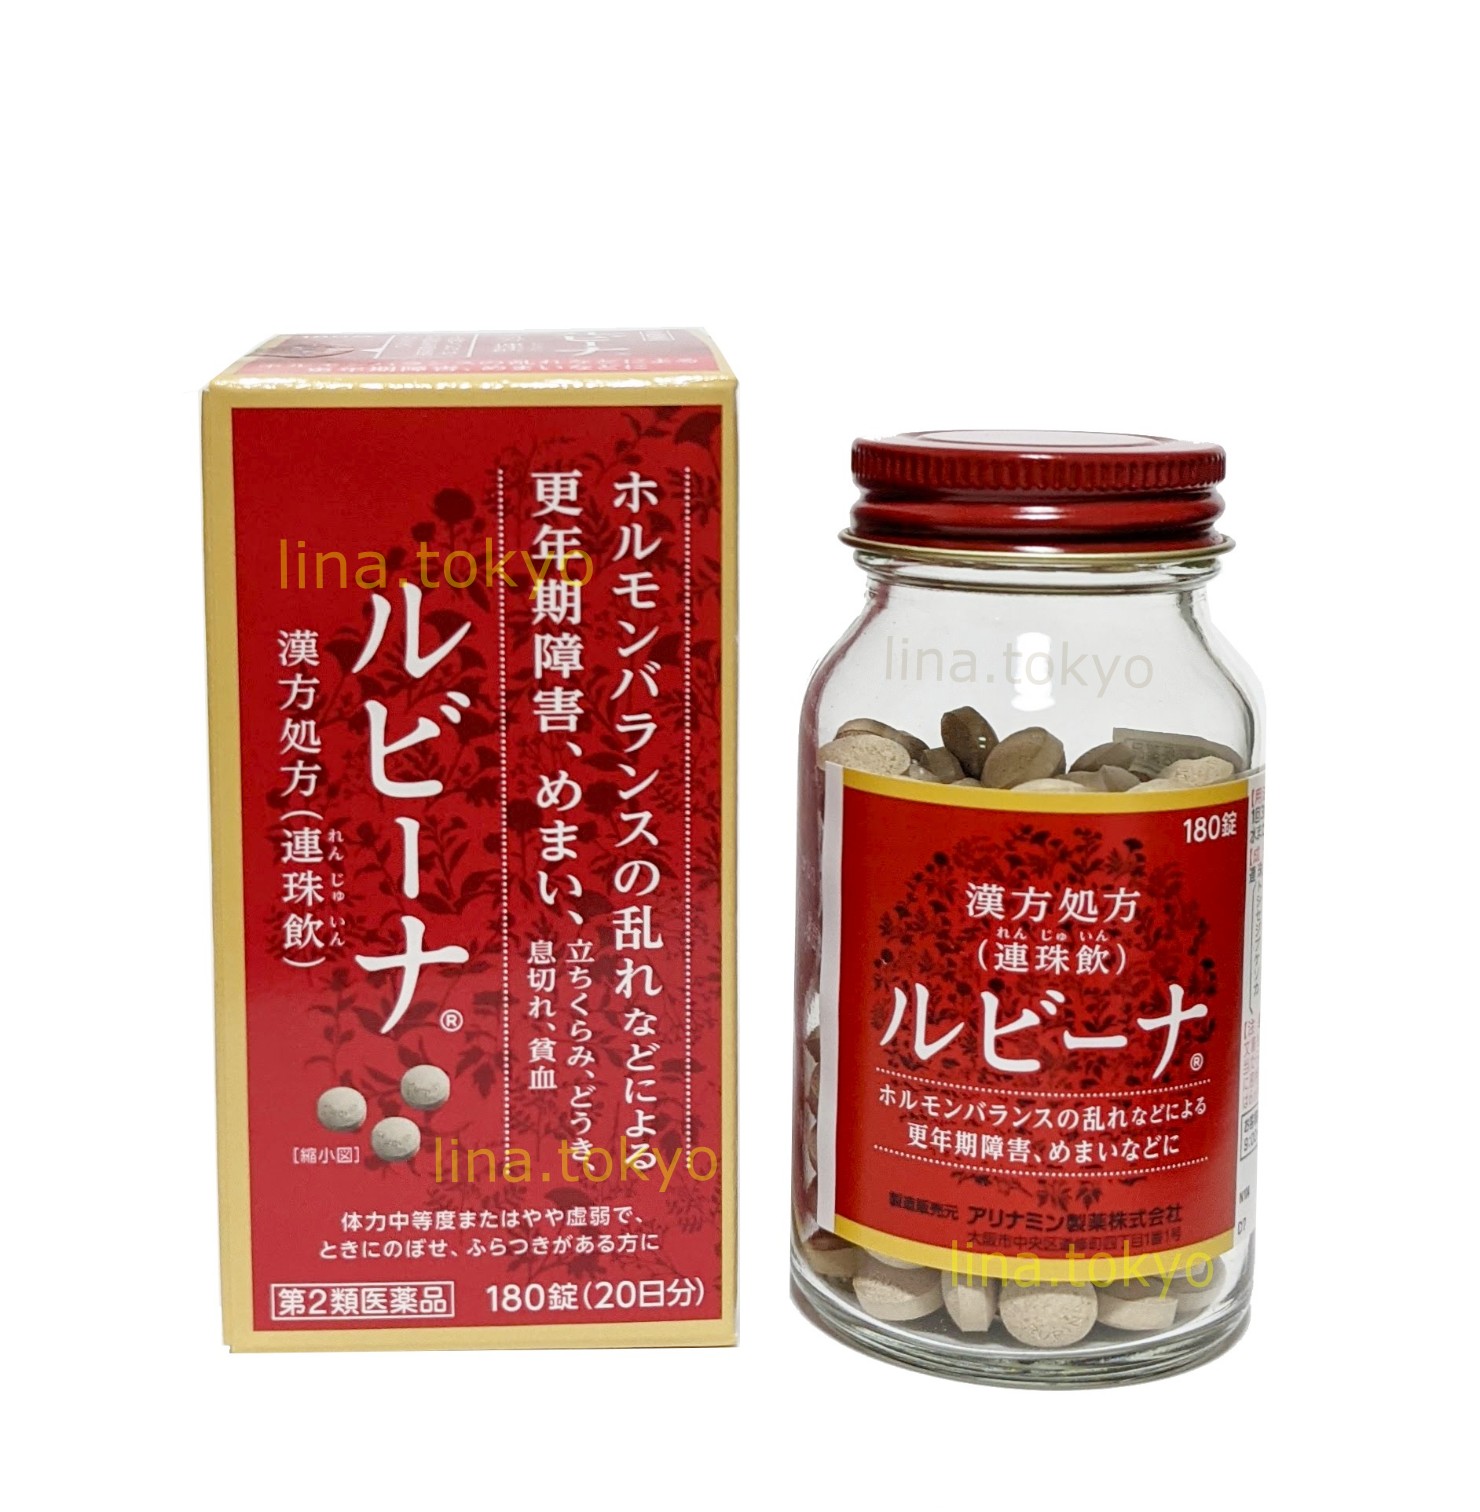 Thuốc bổ máu Nhật Bản Rubina 180 viên chiết xuất từ thảo dược cải thiện tình trạng thiếu máu, chóng mặt, cải thiện lưu thông máu và làm ấm cơ thể (H4017)(Miễn phí giao hàng)